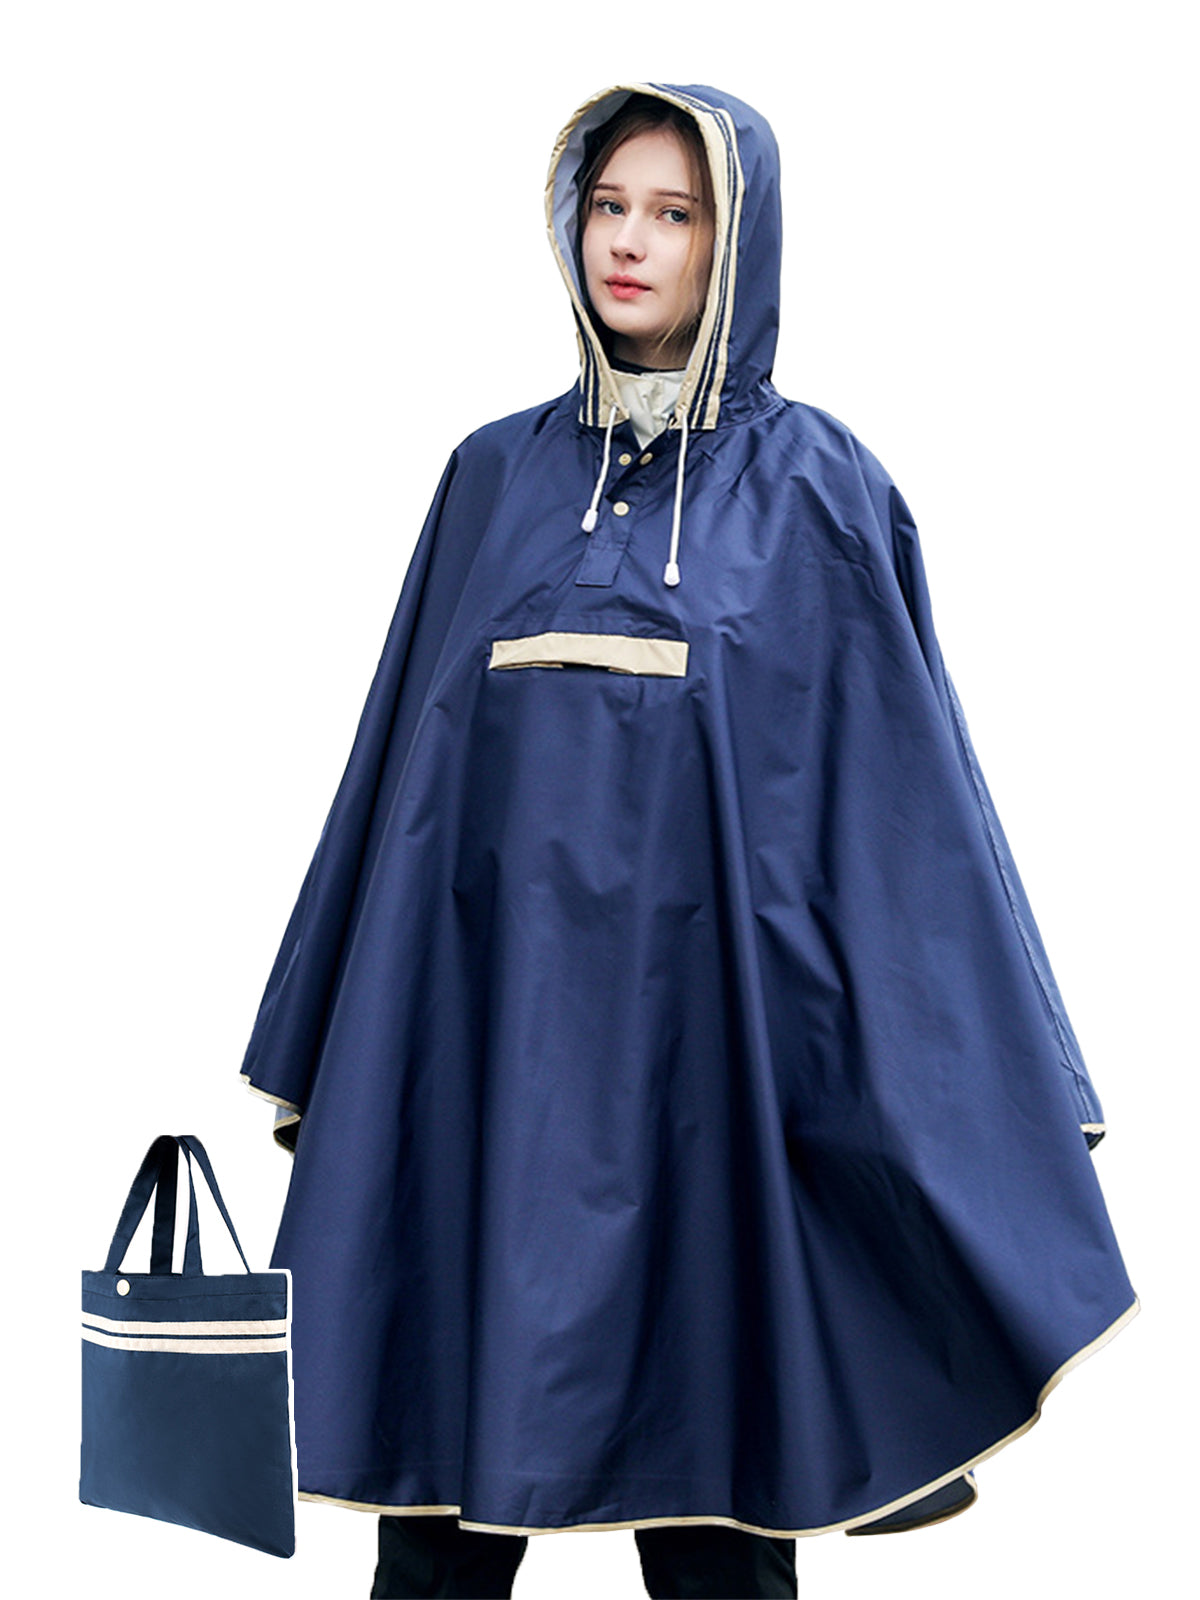 レインウェア レインコート キッズ カバー ポンチョ タイプ 子供 大人 男女兼用 雨具 携帯バッグ付き